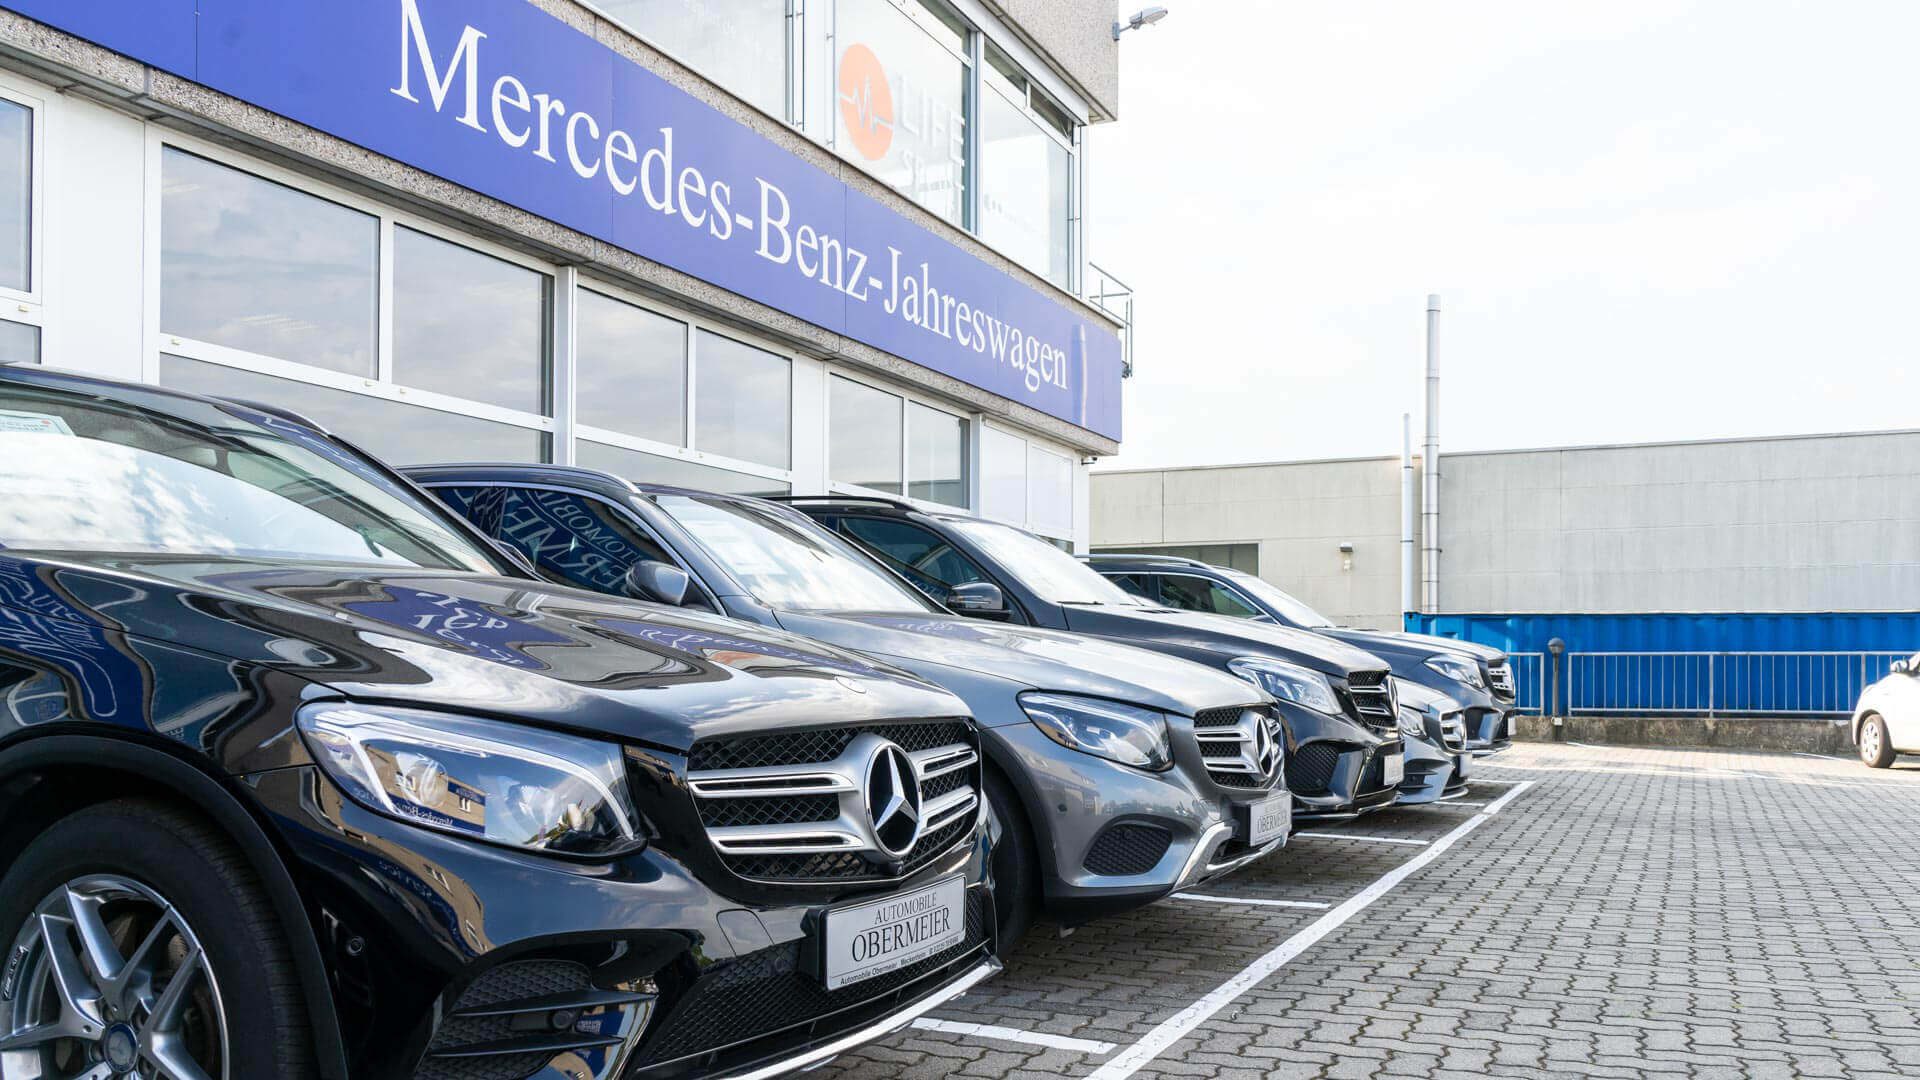 Aufgereihte Gebrauchtfahrzeuge von Mercedes Benz vor Automobile Obermeier Gebäude